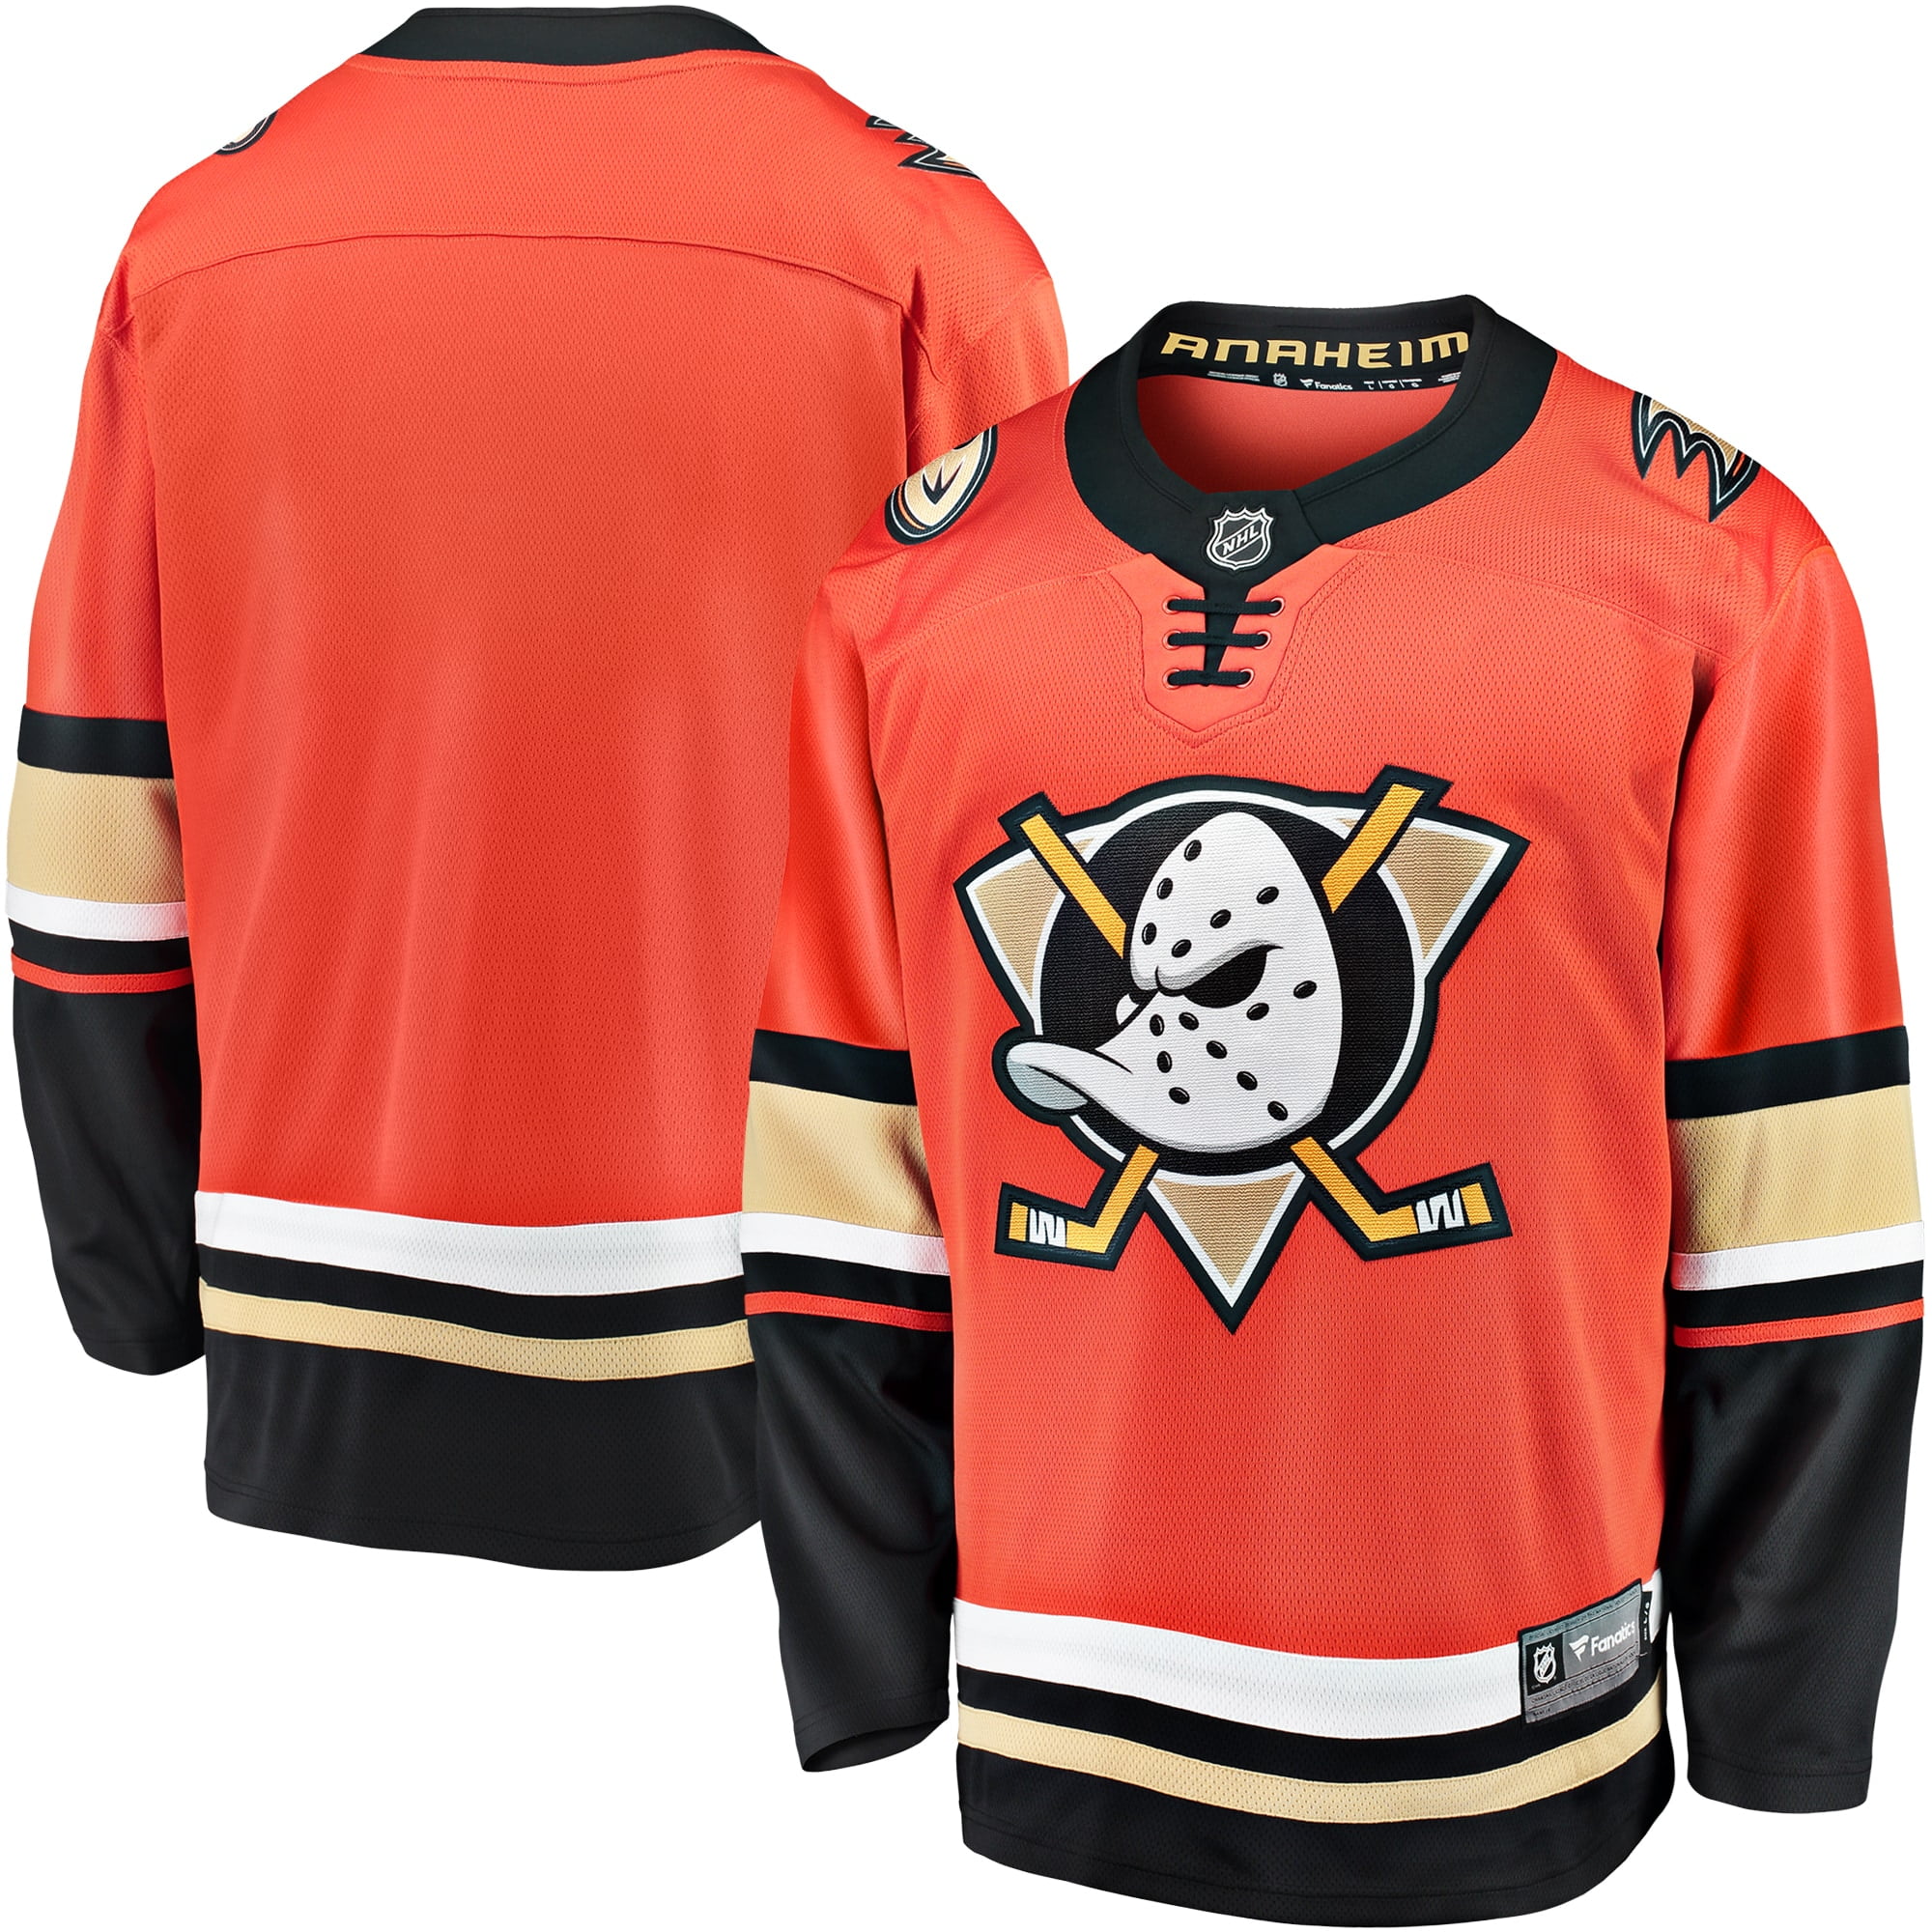 Anaheim Ducks Fanatics Branded Premier 